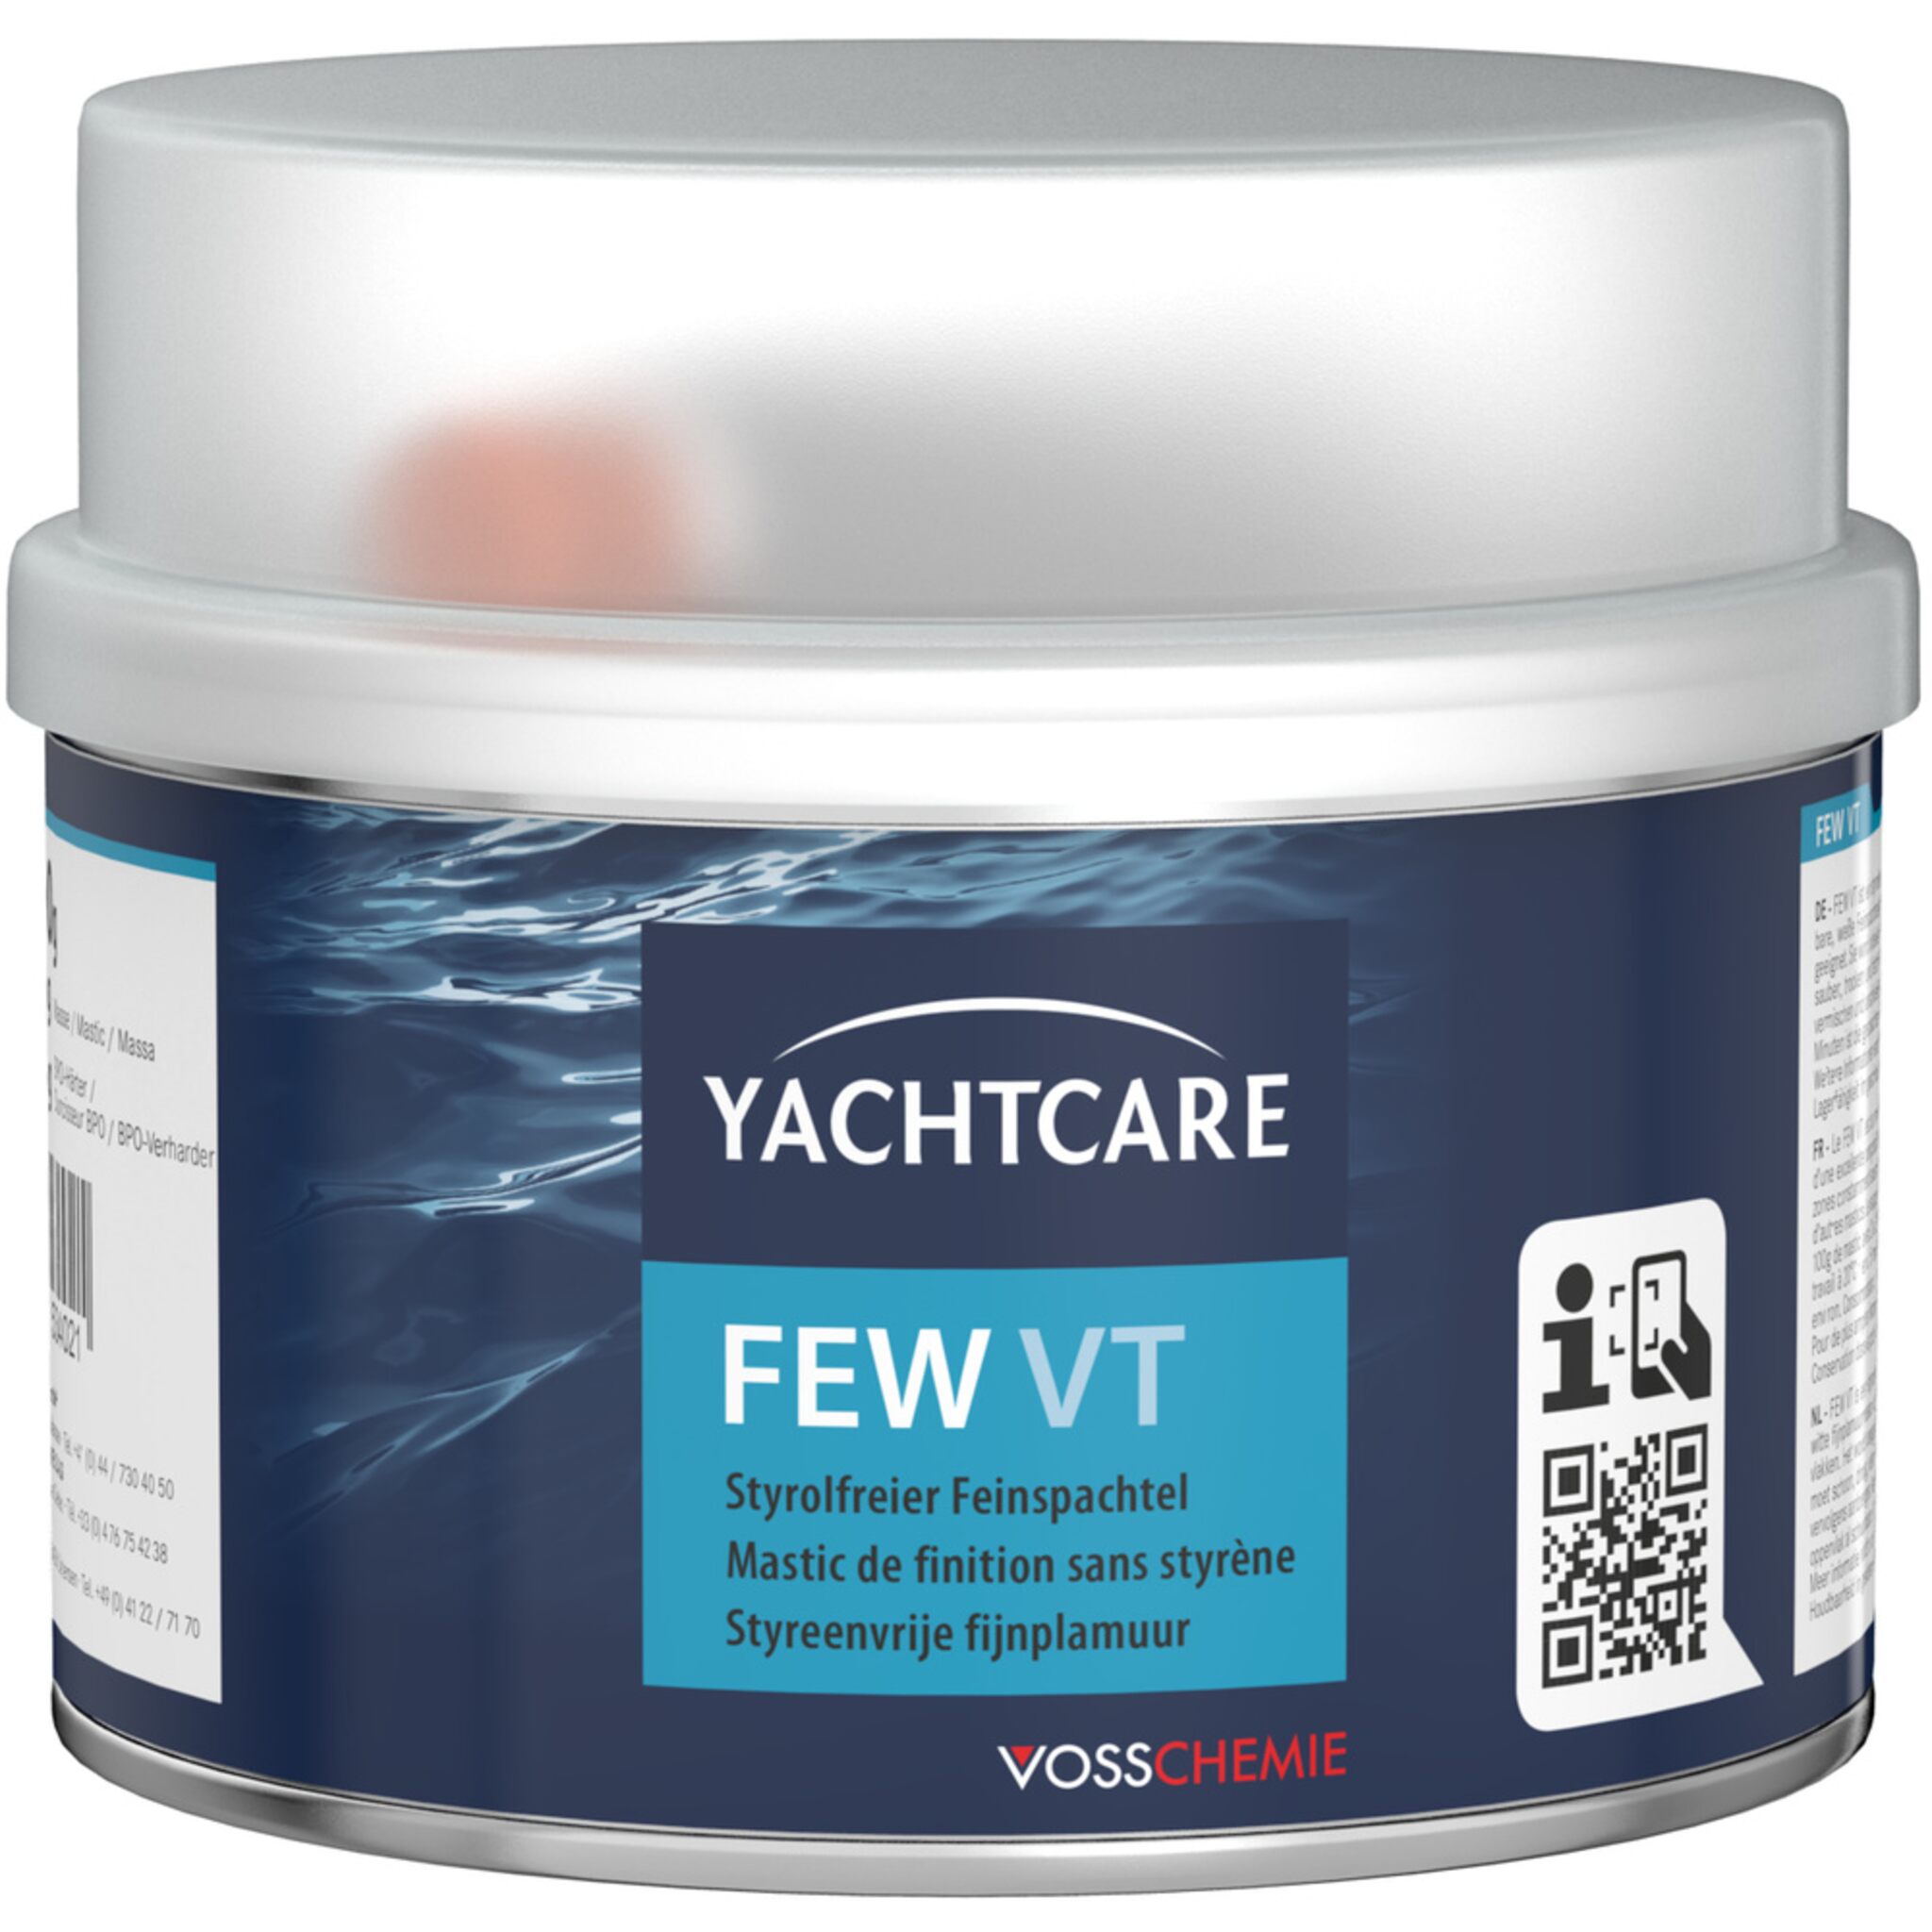 Yachtcare FEW VT Feinspachtel